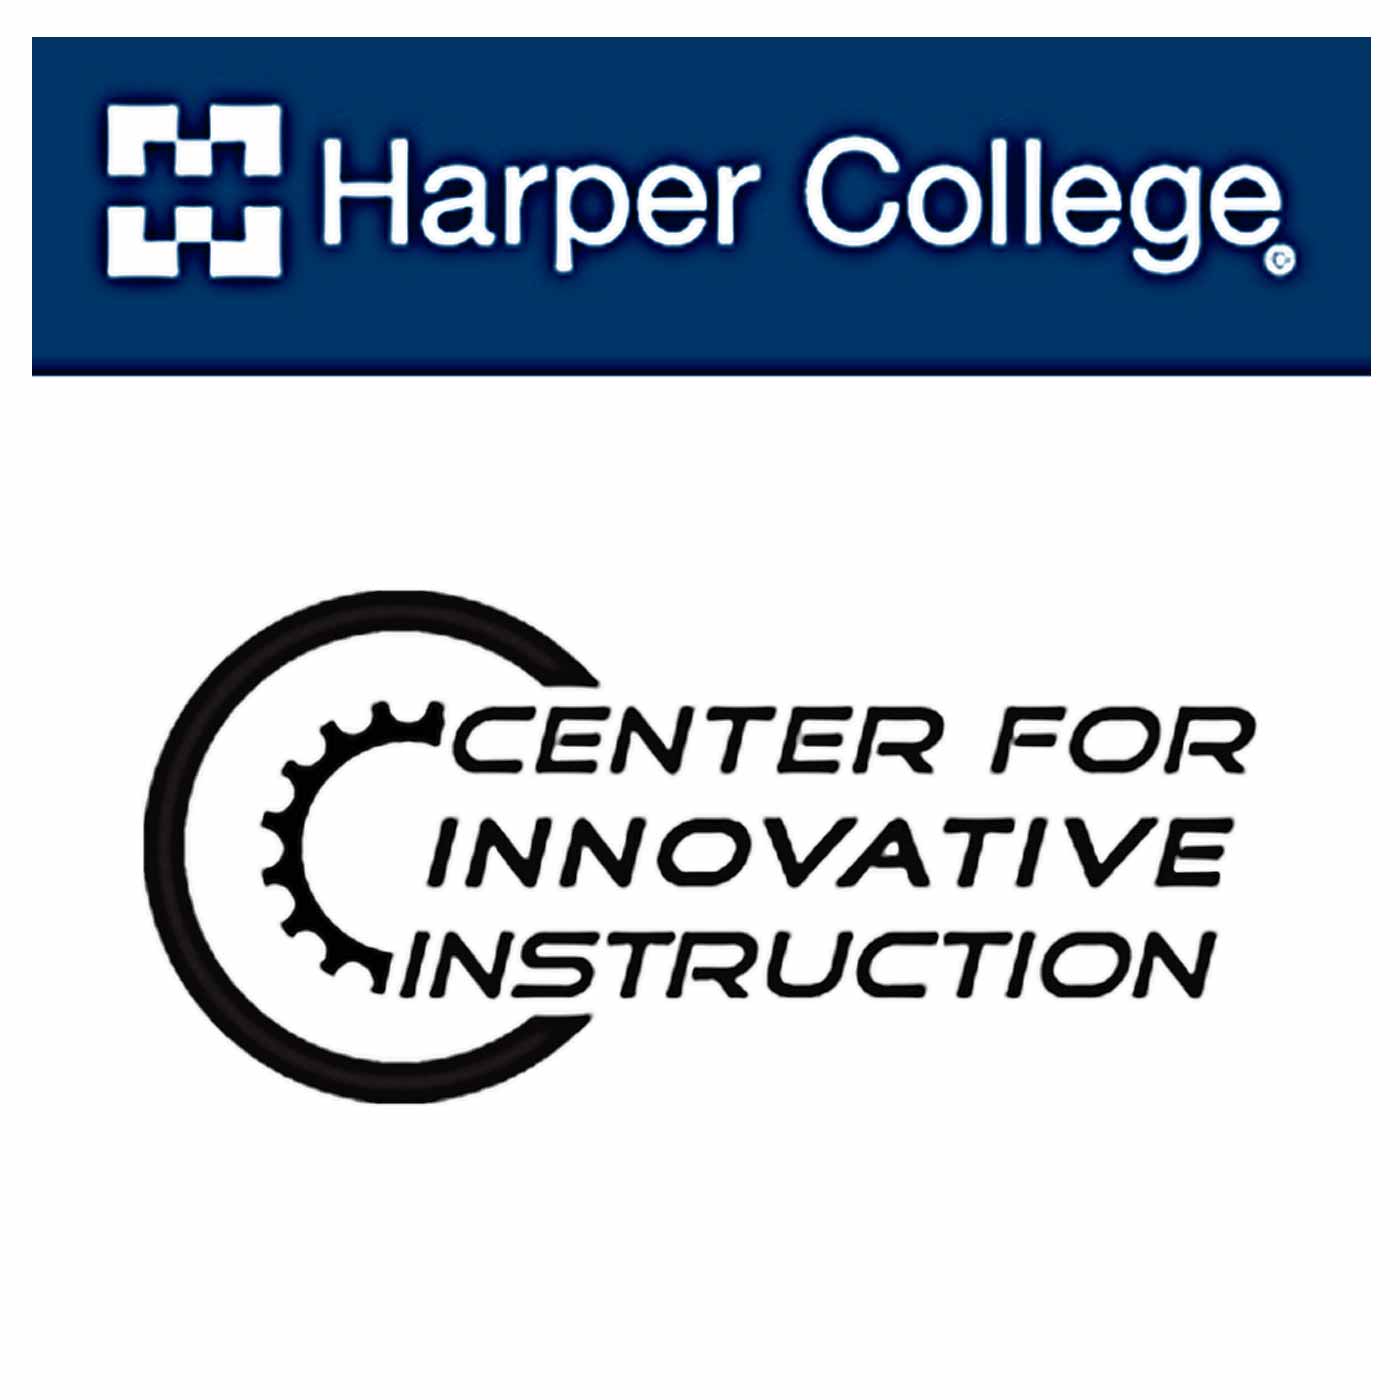 Harper College - Center for Innovative Instruction: Kurt Hemmer, Jim Gramlich & Tom Knoff